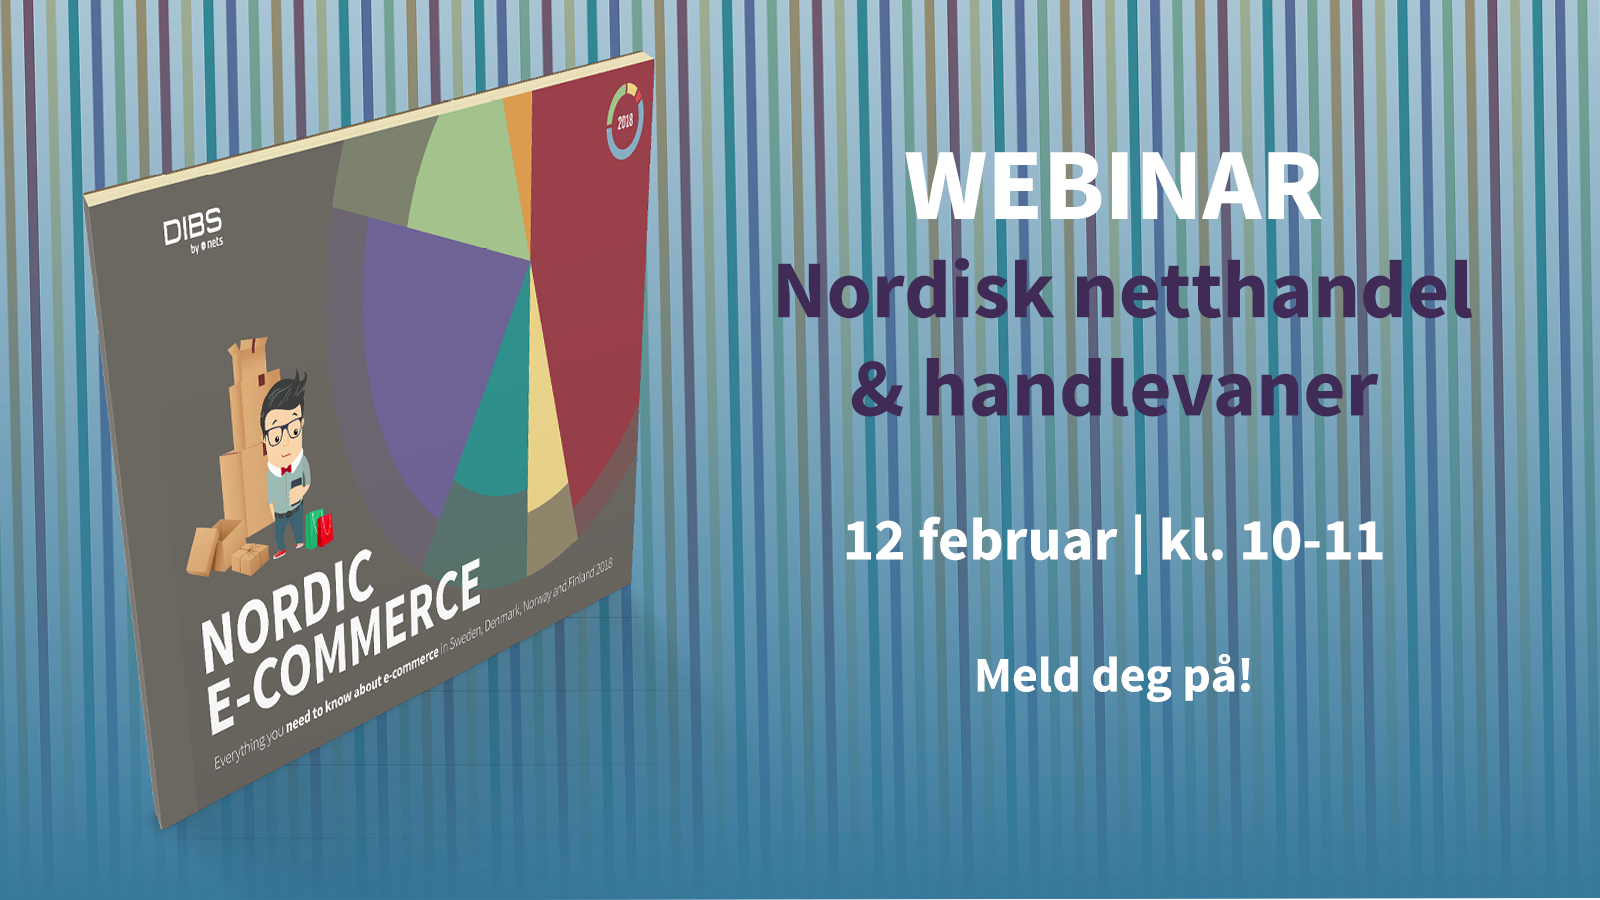 Webinar: Nordisk Netthandel & handlevaner | 12 februar | Kl. 10-11